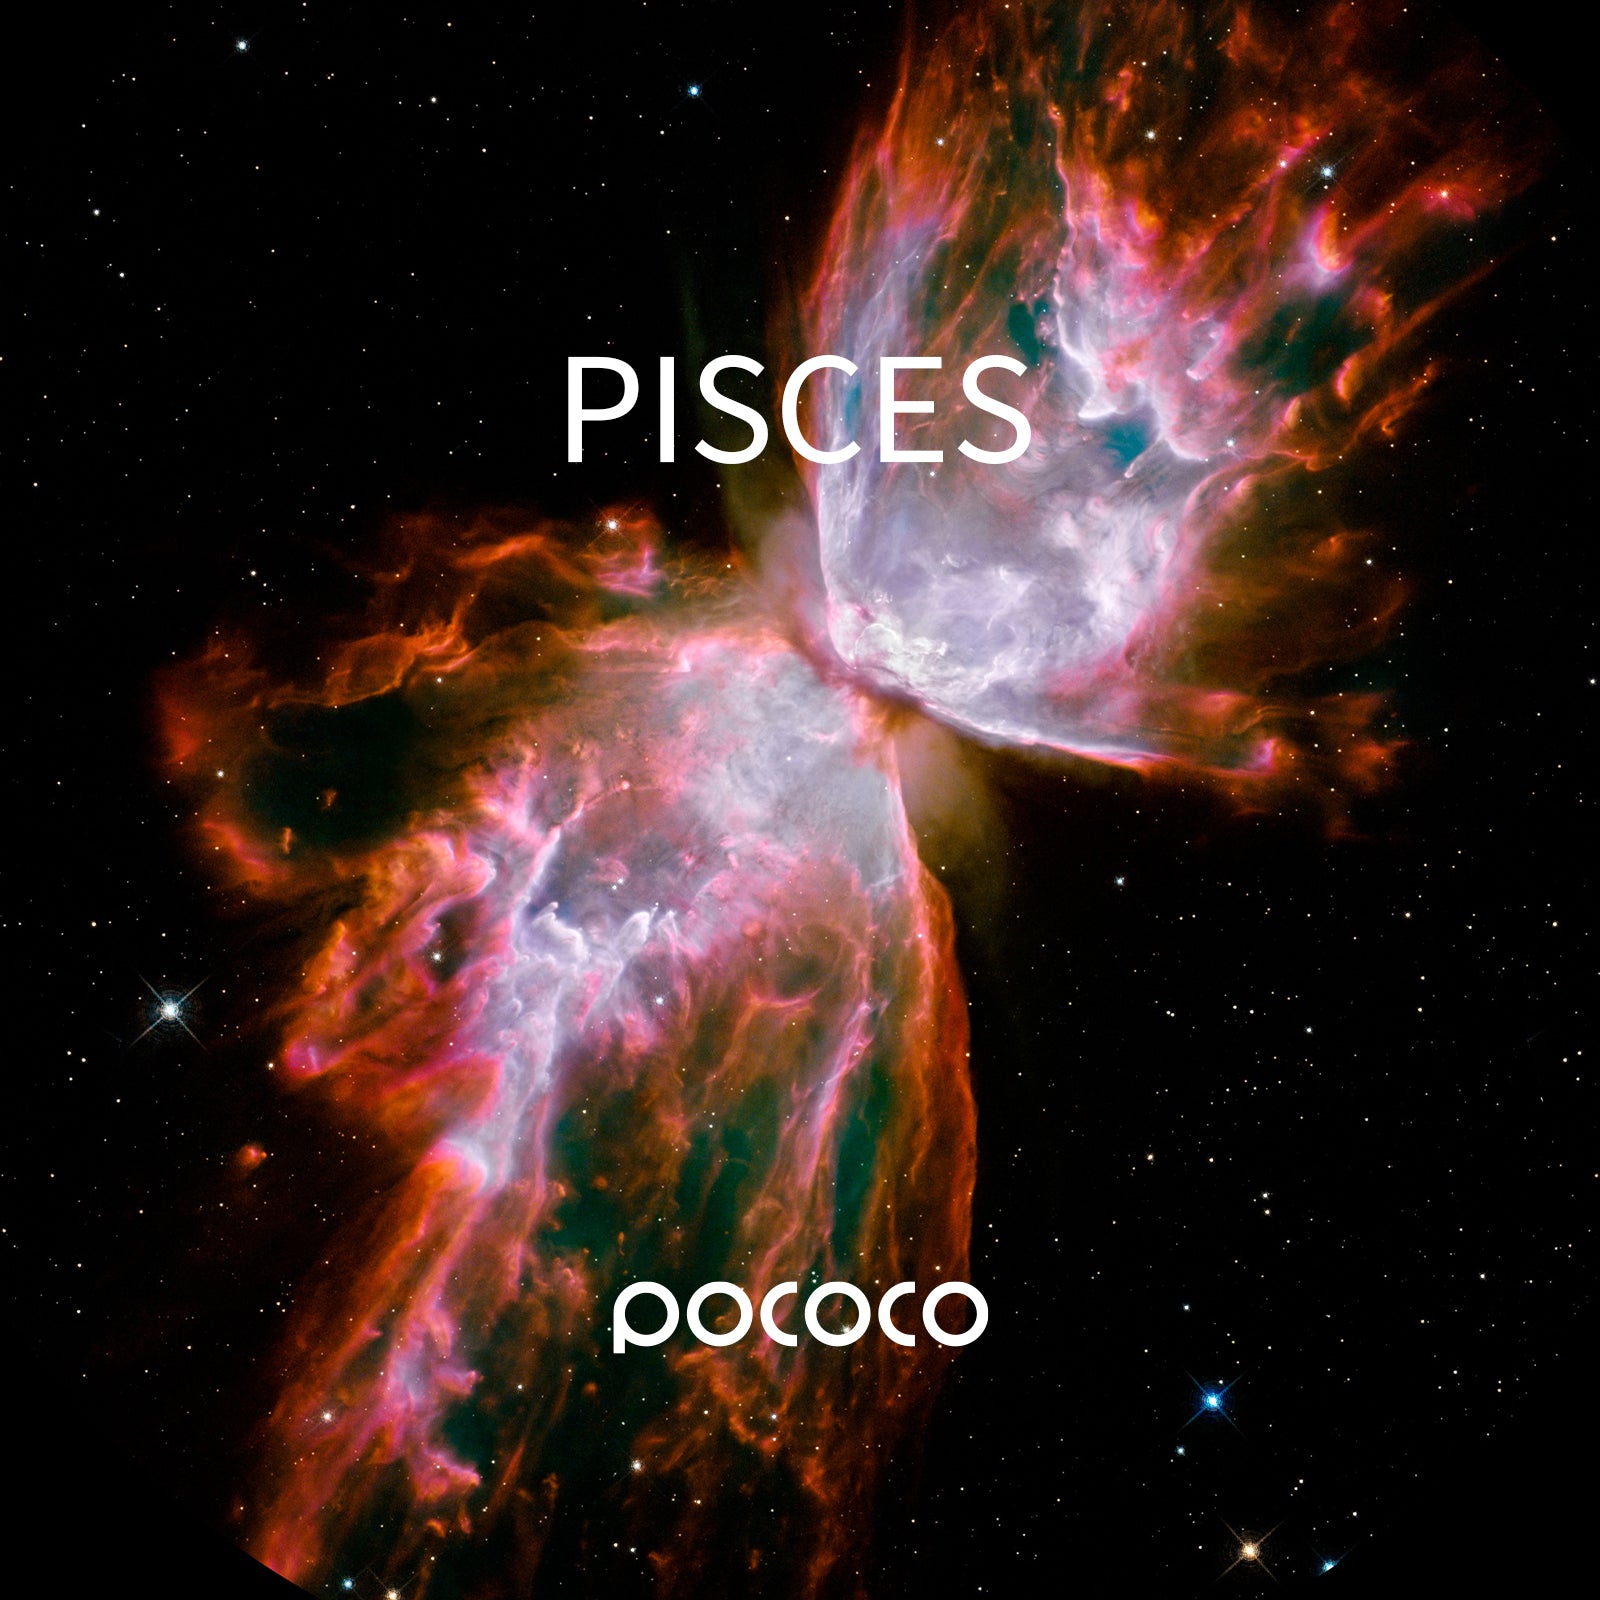 POCOCO Galaxy Projector Disc - Psices